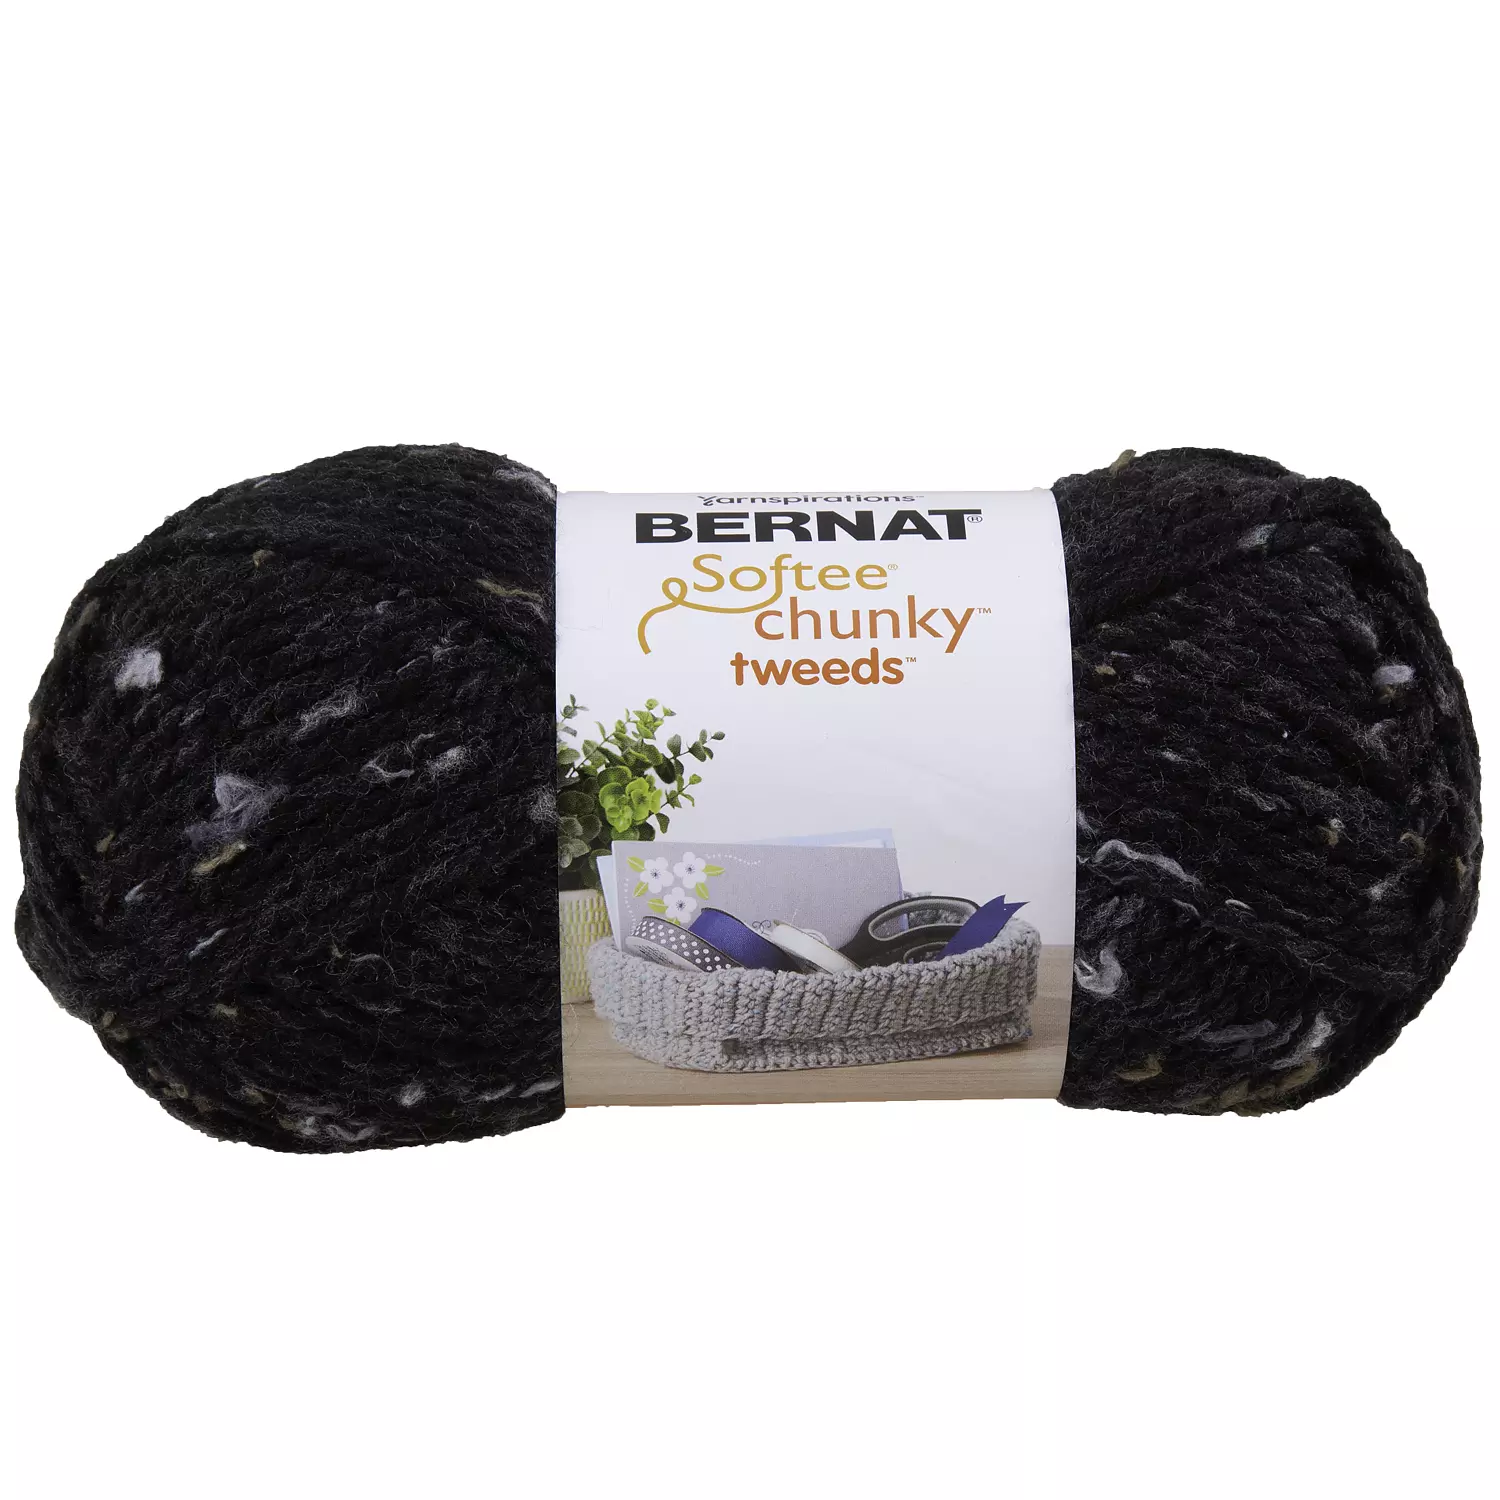 Bernat Softee Chunky Tweeds - Fil, tweed noir